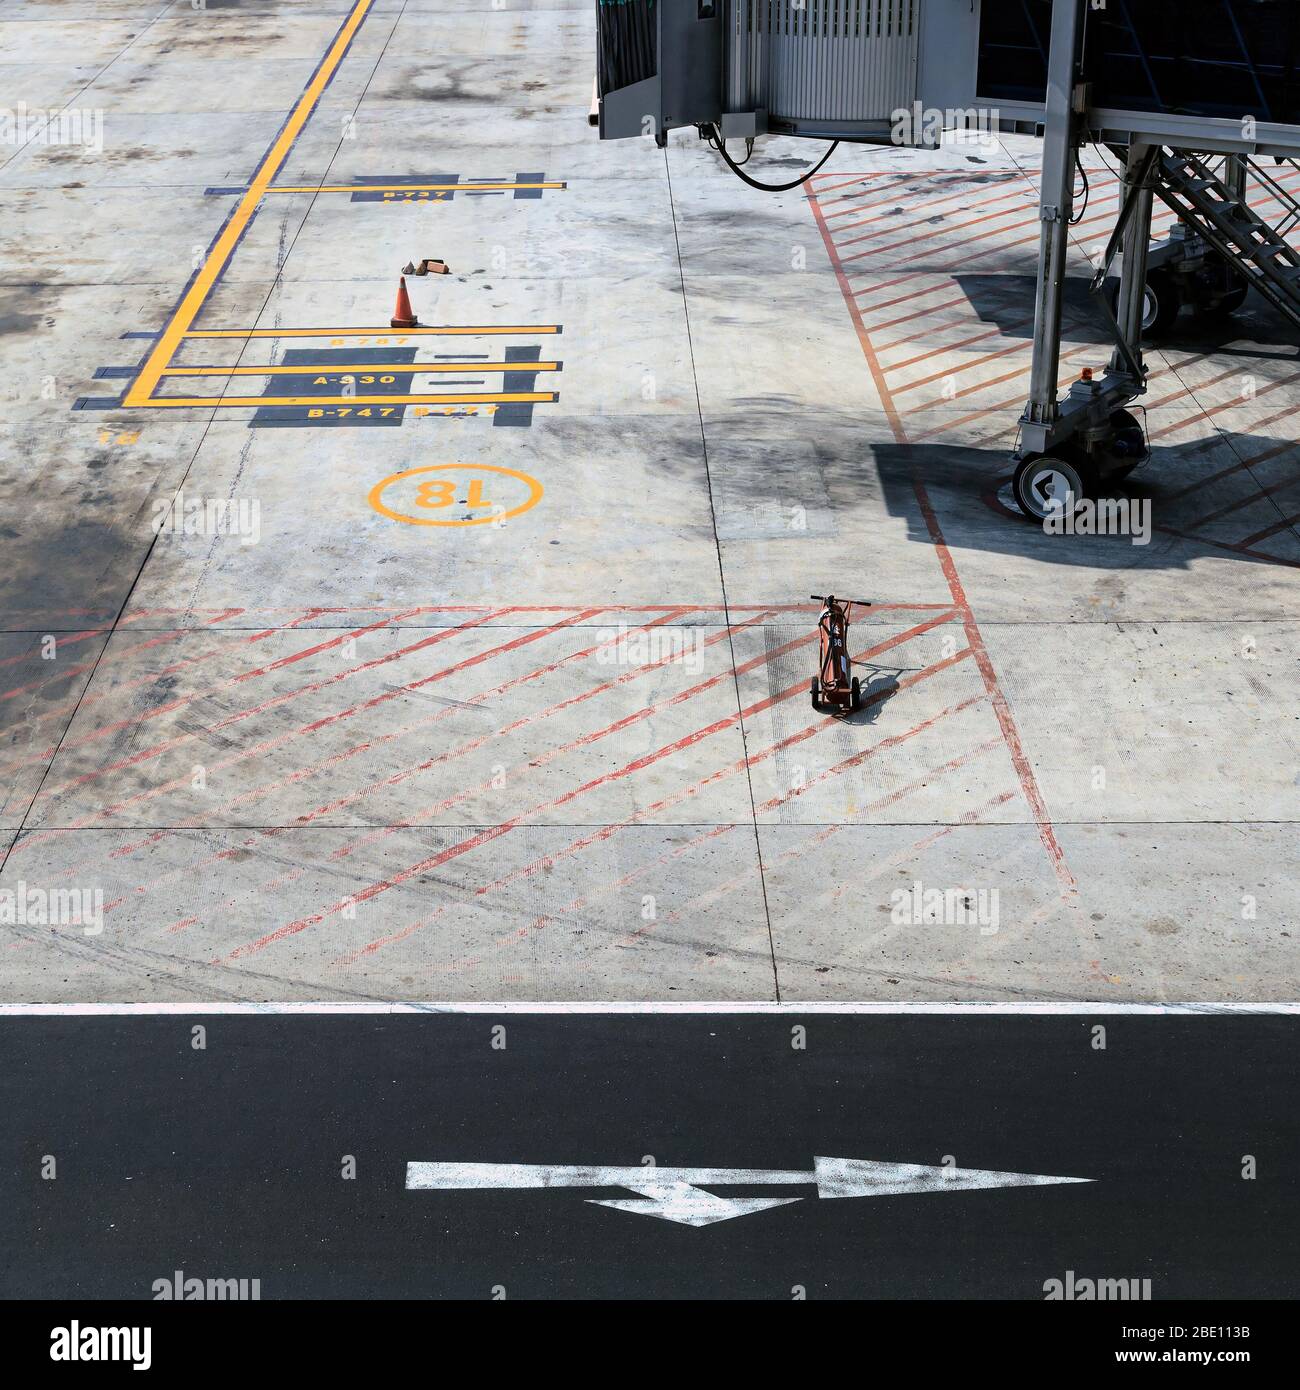 Flugplatz, in dem die Flüge geparkt sind und Bodenmarkierungen für  Flugzeuge zeigen Stockfotografie - Alamy